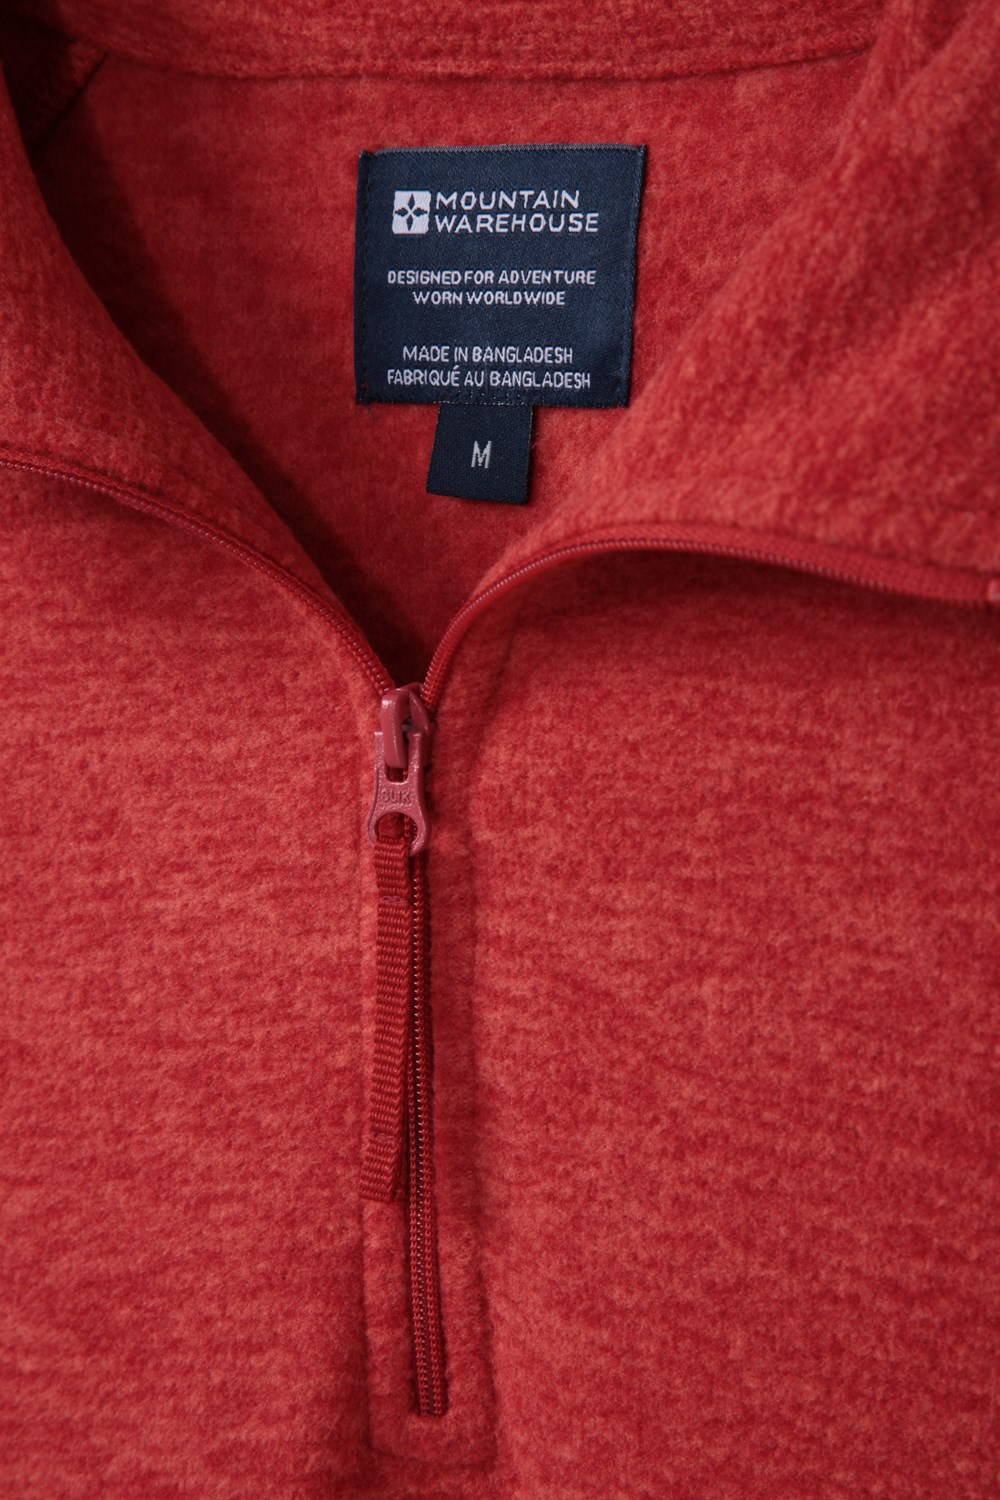 Mountain Warehouse Snowdon Men's Micro Fleece Warm Top Breathable | eBay